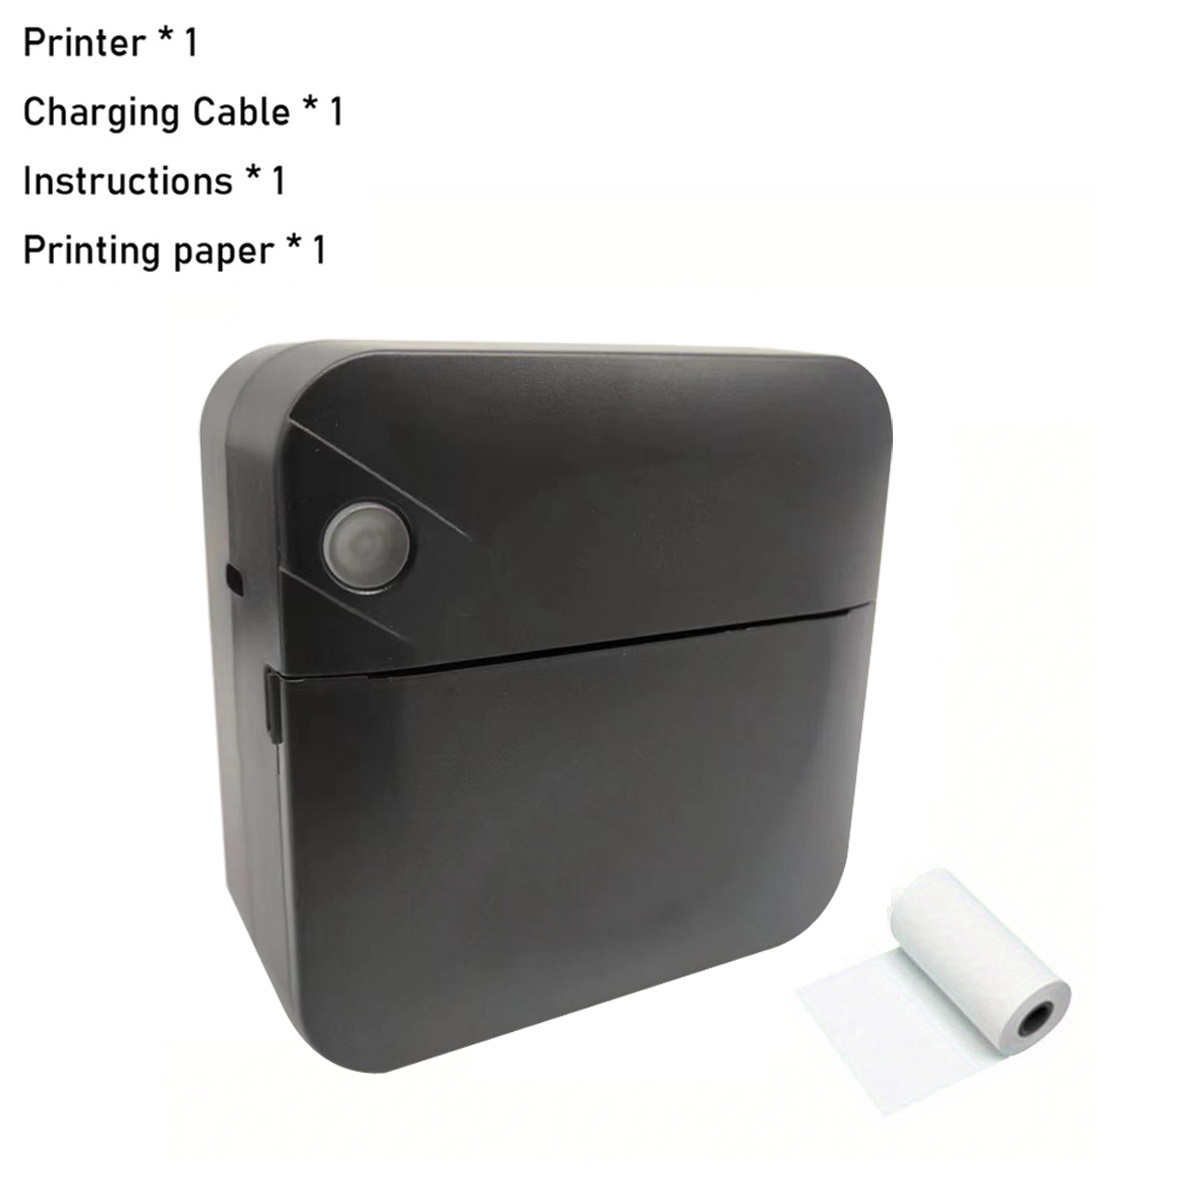 Mini impresora portátil BT Impresora fotográfica inalámbrica Impresora móvil  200 ppp para recibos Notas adhesivas Lista de etiquetas con 1 rollo de  papel térmico Compatible con Android iOS